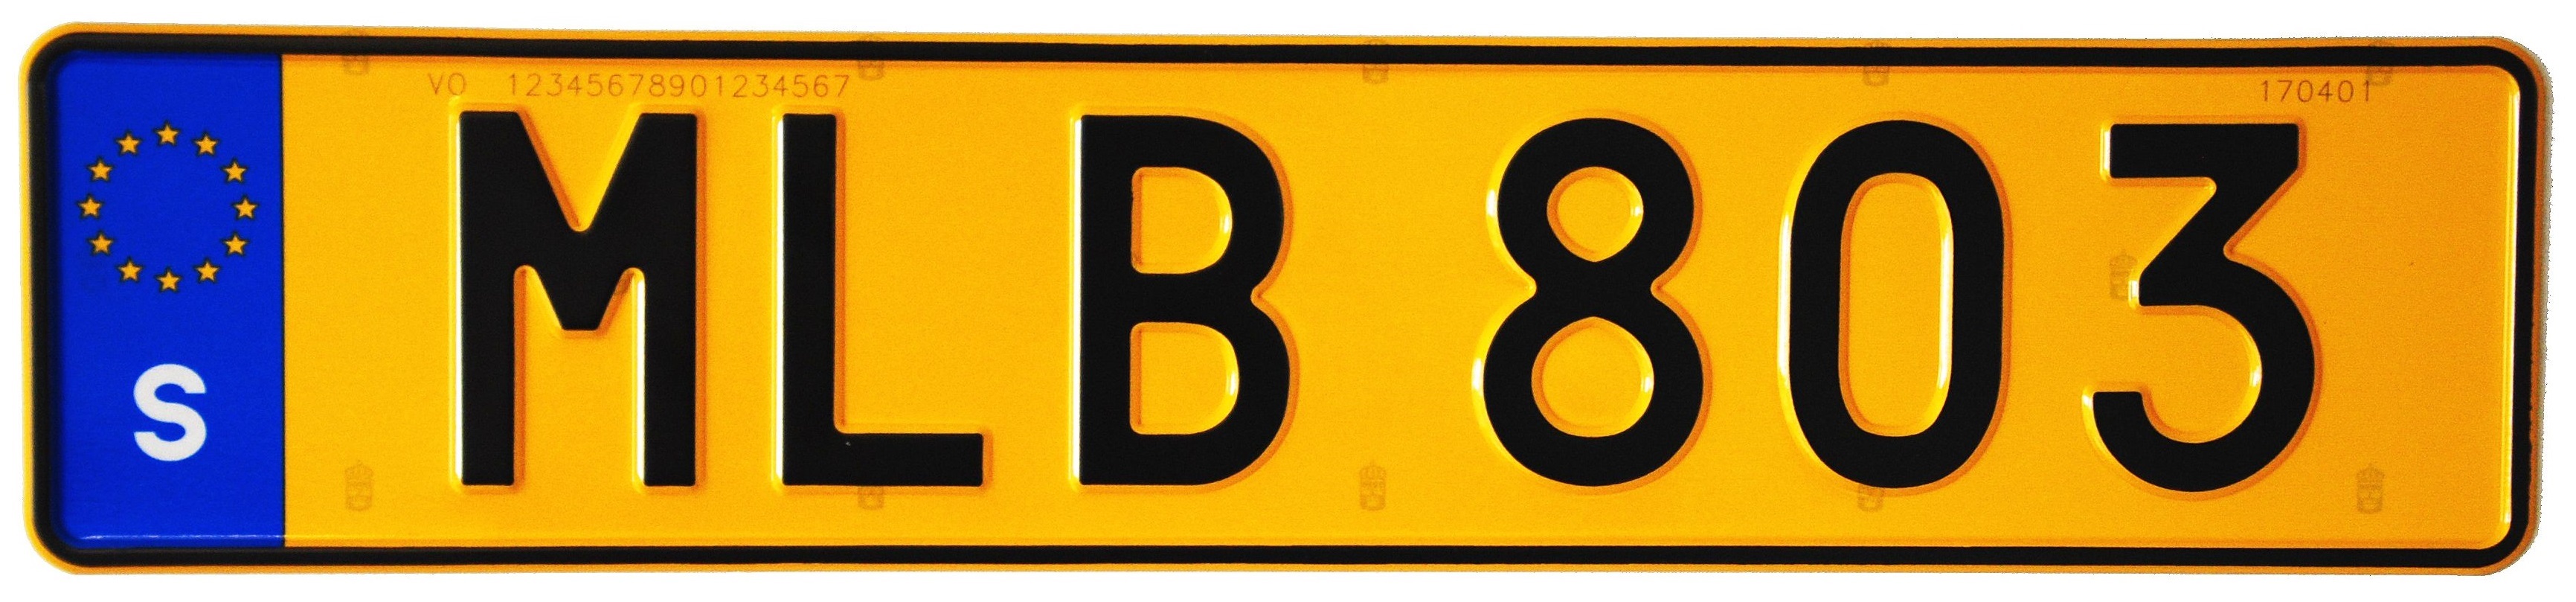 Включи номер м. Автомобильные номера Швеции. Шведские номерные знаки. Гос номера Швеции. Транзитные номера на авто.